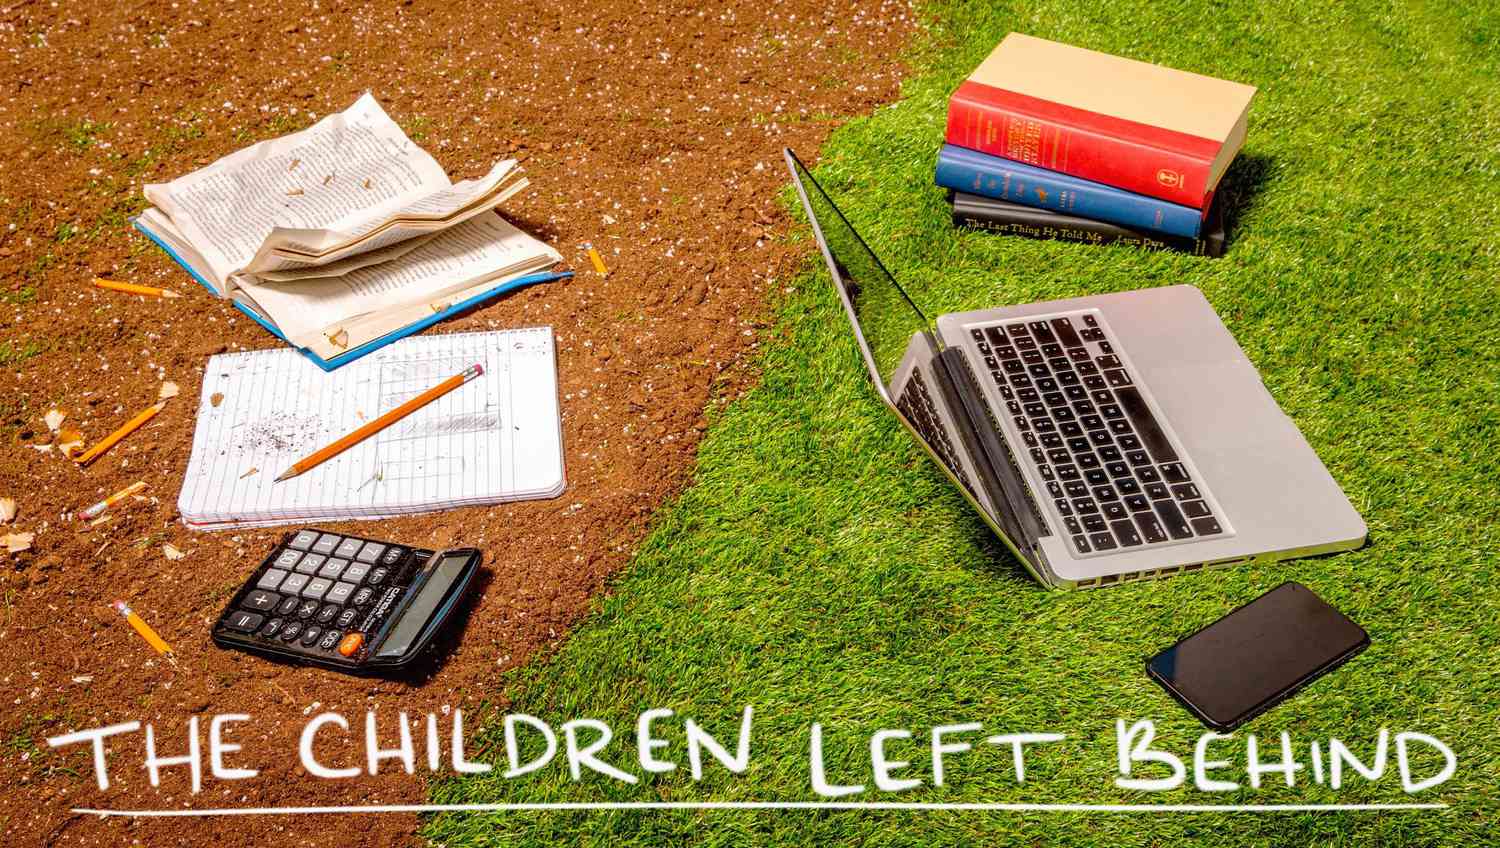 Los niños dejados atrás: El sistema escolar de Estados Unidos está fallando más que nunca a las familias. Padres y educadores pueden participar en la reforma.